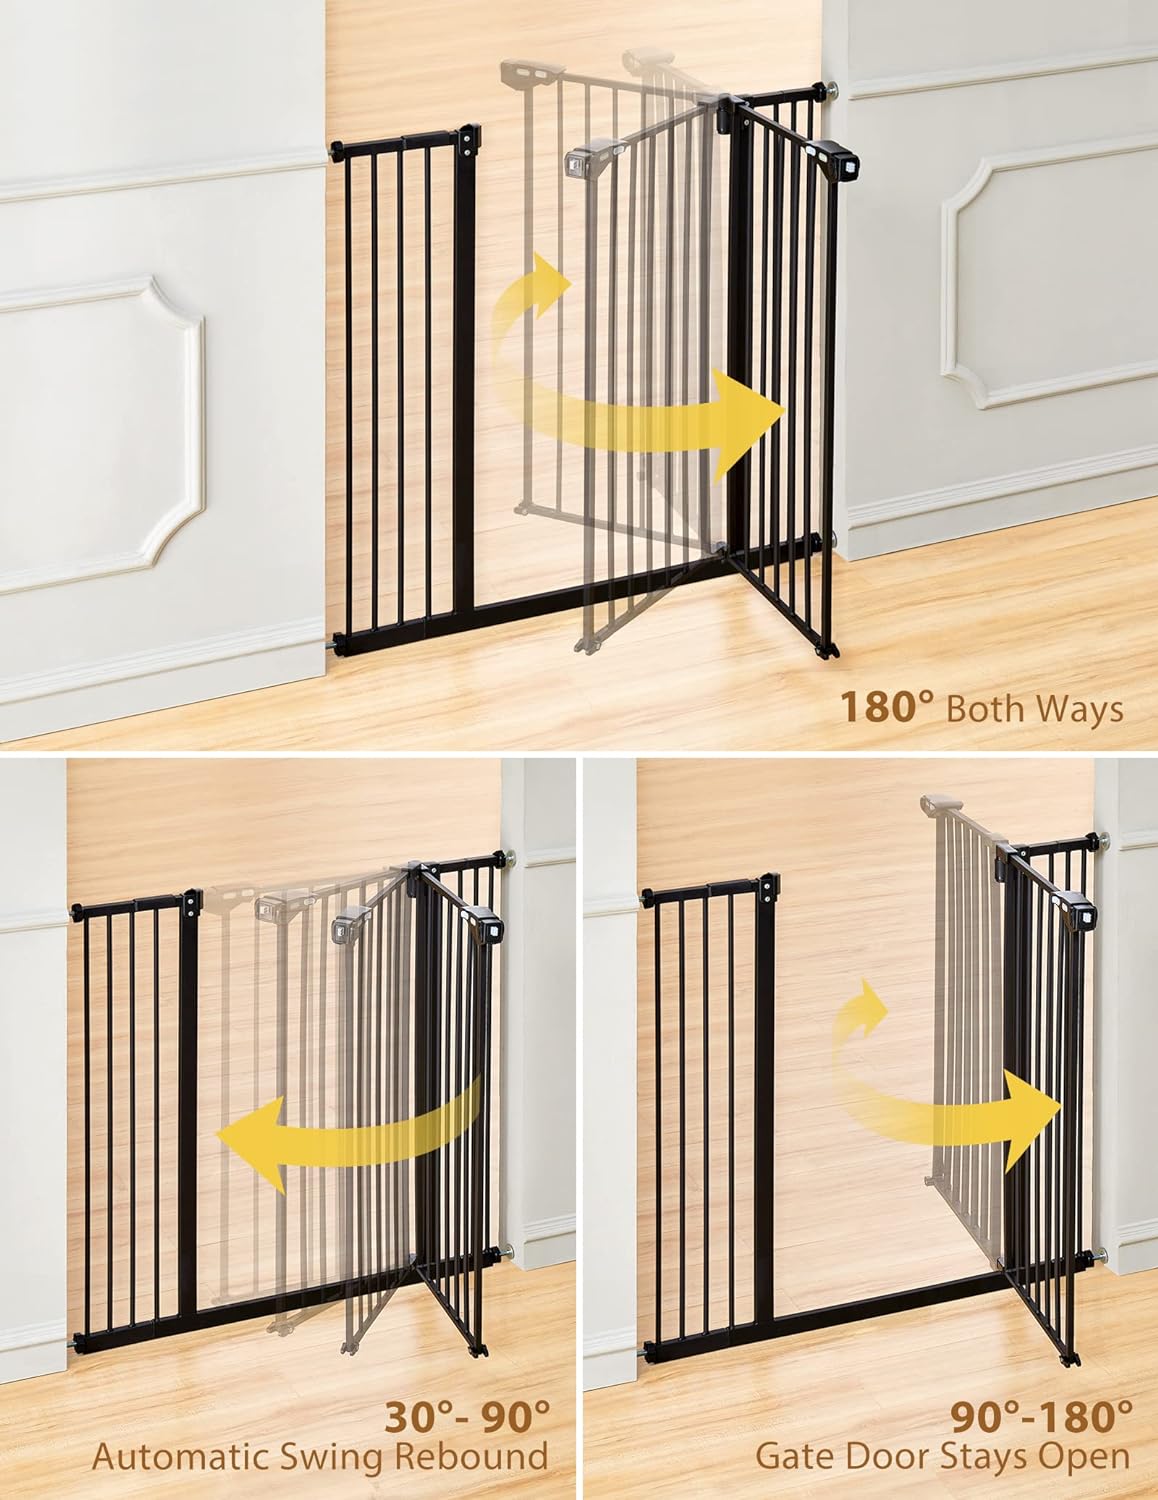  Etlegor Puerta de seguridad para bebés, puerta de seguridad de  madera de ajuste súper flexible para abrir de 76 a 31.9 in de ancho con  doble mecanismo de bloqueo, ideal para